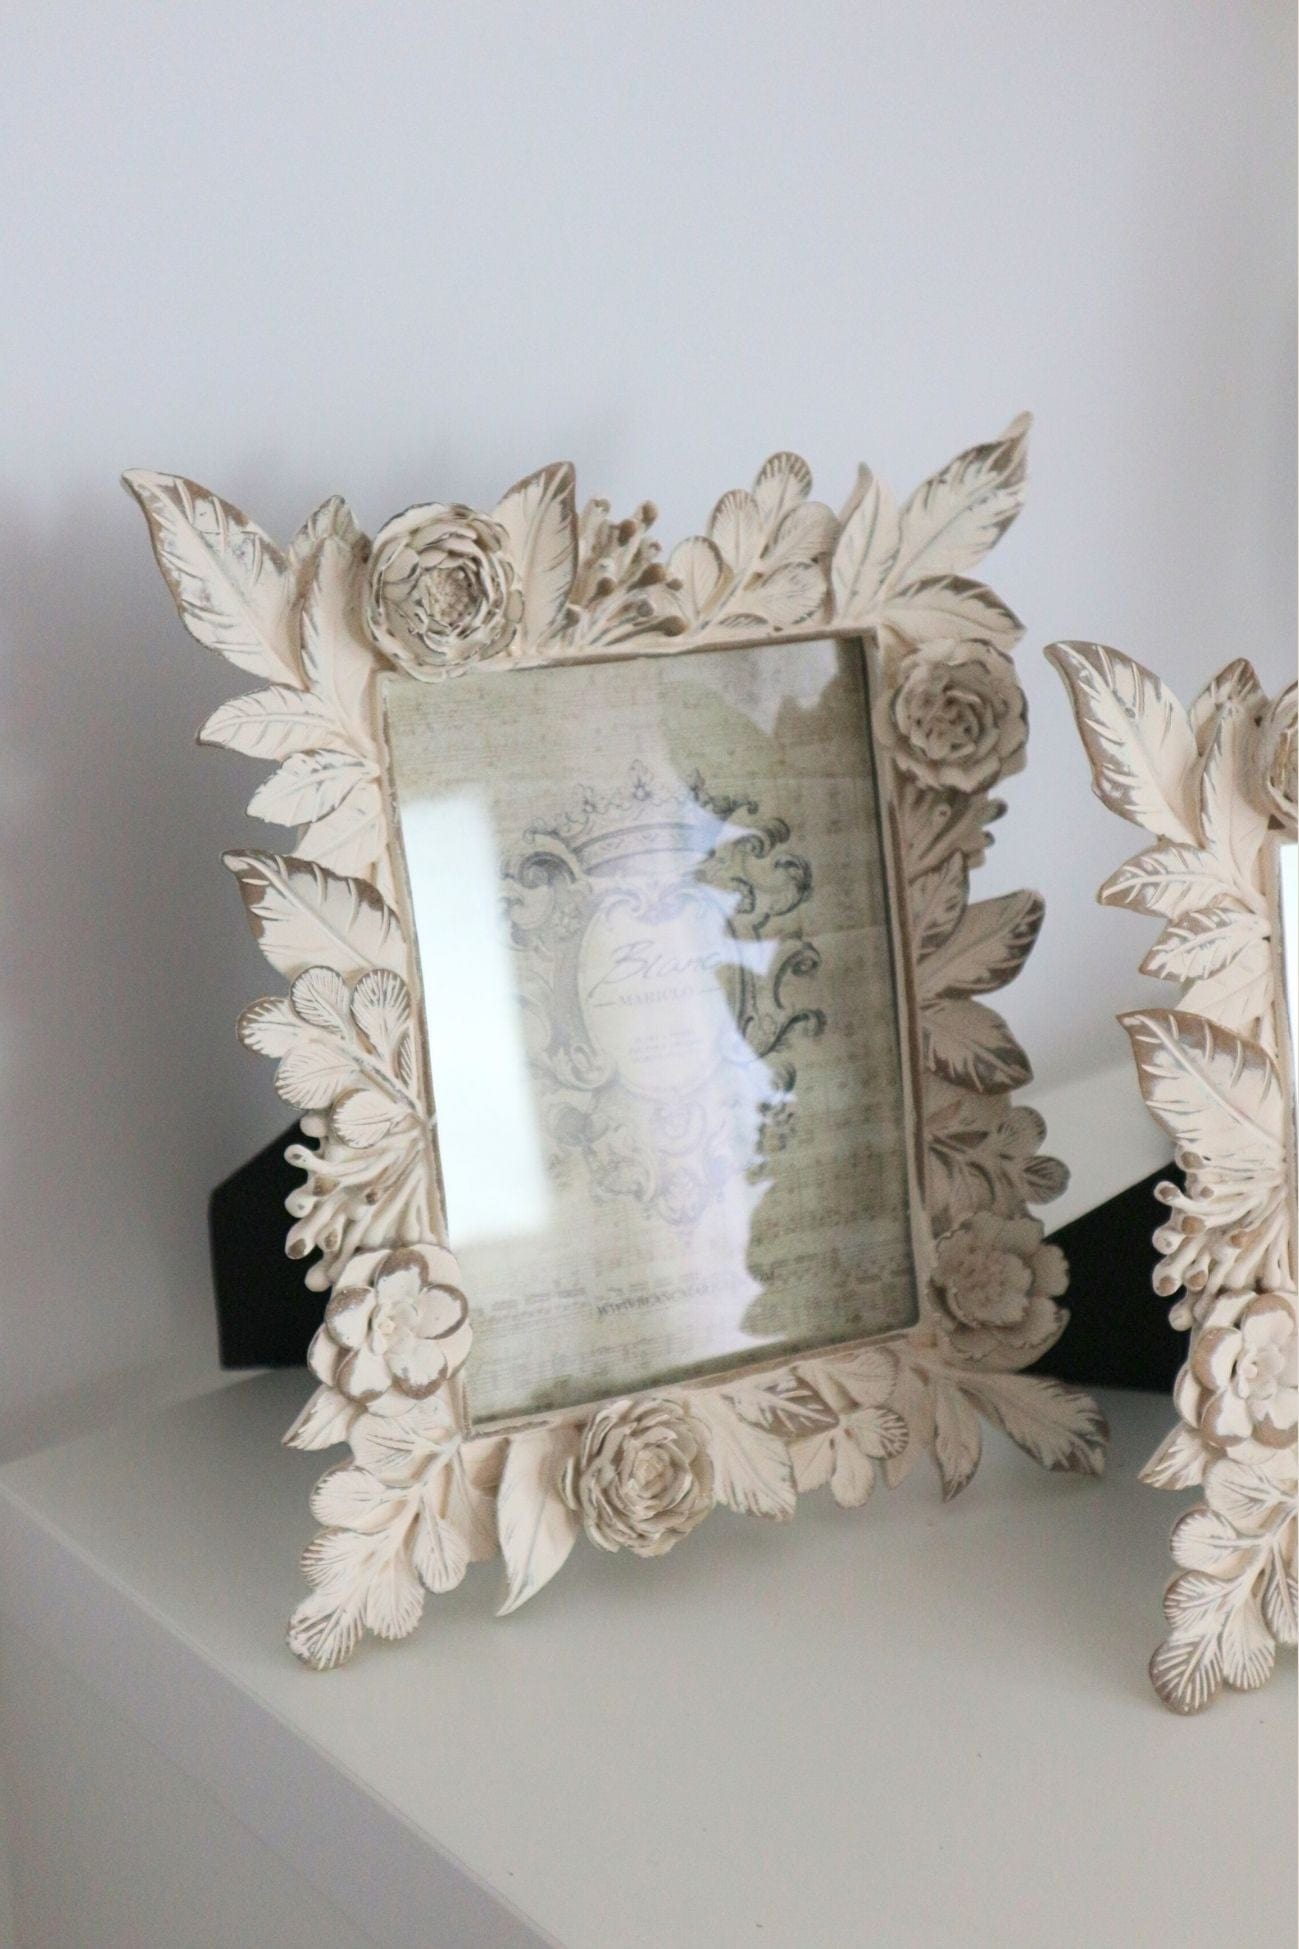 Blanc MariClo' Sentimento Sentimento - Sentimento - Cornice portafoto con rose e foglie - due dimensioni | Blanc MariClo' Grande